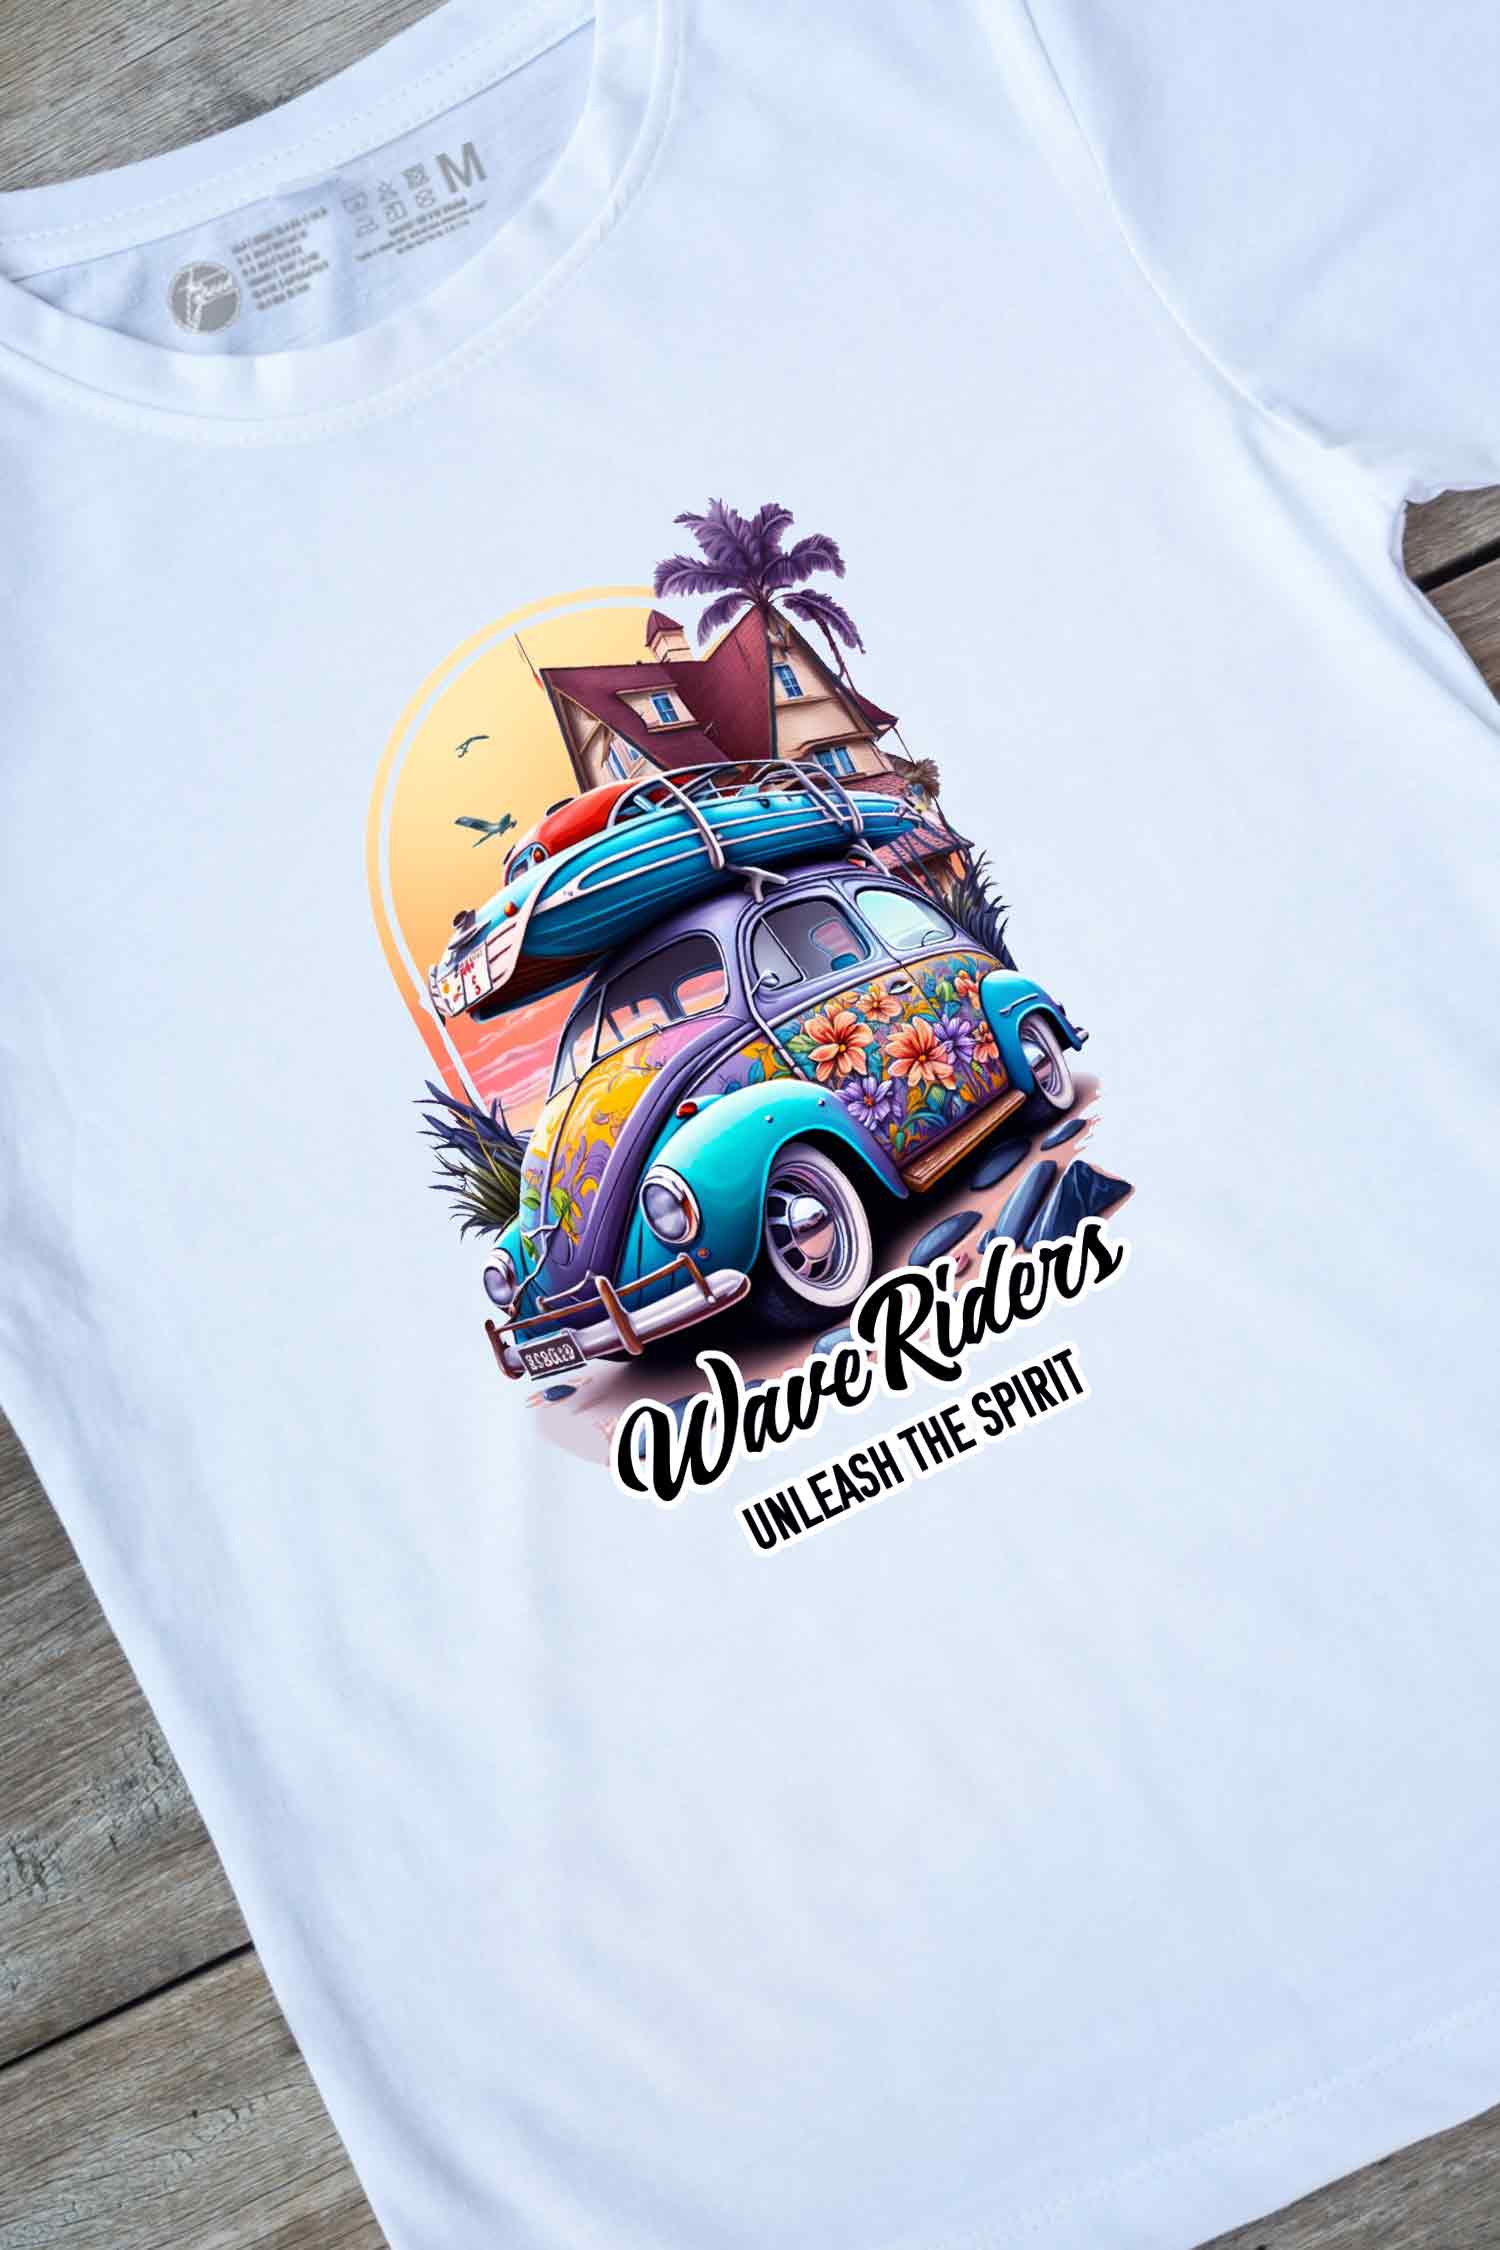 【THE GREEN】夏の風を感じる一枚！/ウェーブ・ライダーズ・レトロ・カーTシャツ -Wave Riders Retro Car  Tee/cotton 100%/size:XS-XXL